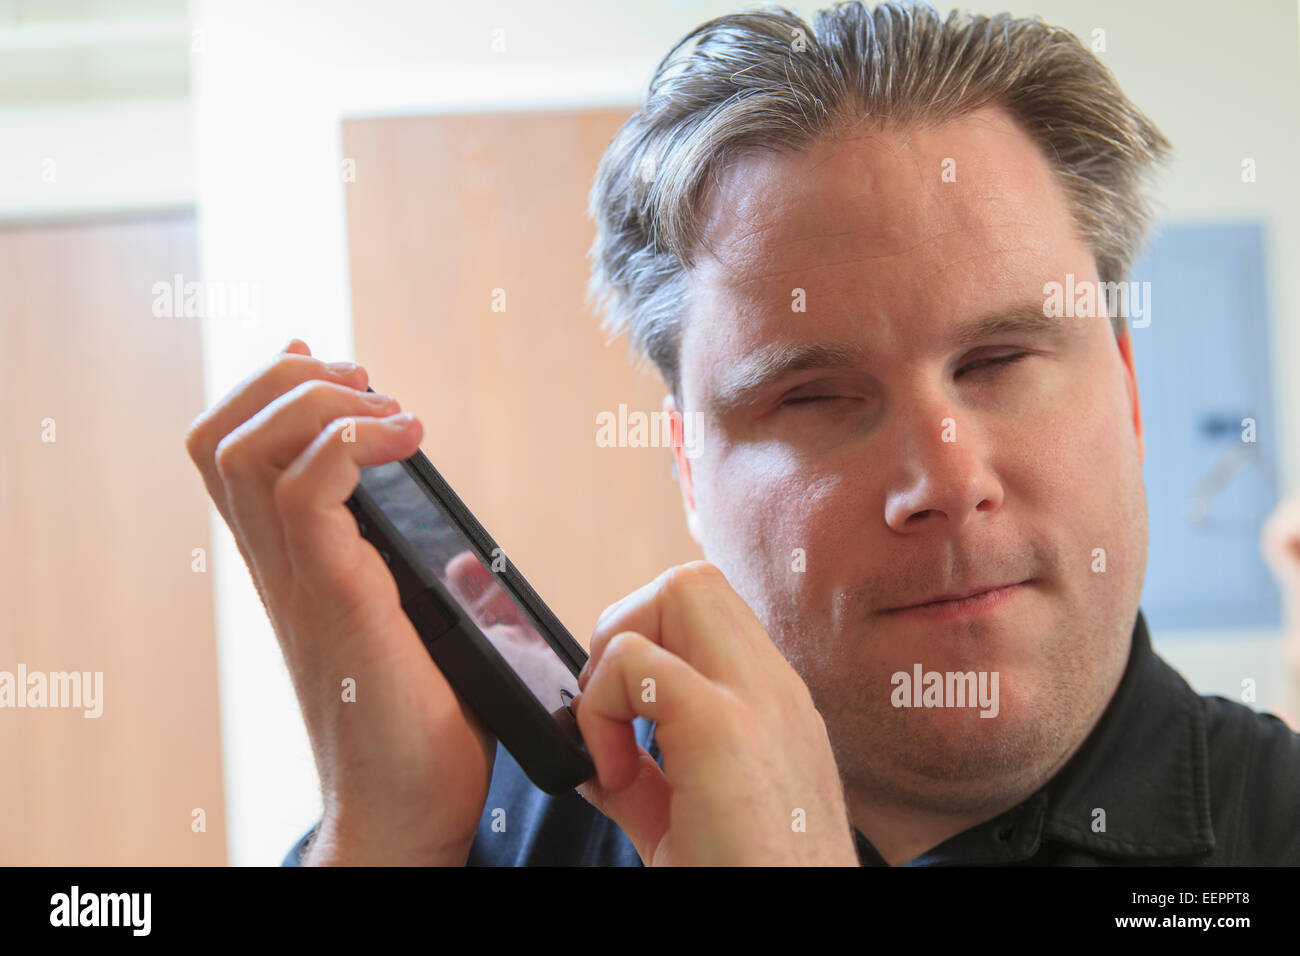 L'homme avec la cécité congénitale à l'aide de dispositifs facilitant l'écoute dans son téléphone cellulaire Banque D'Images